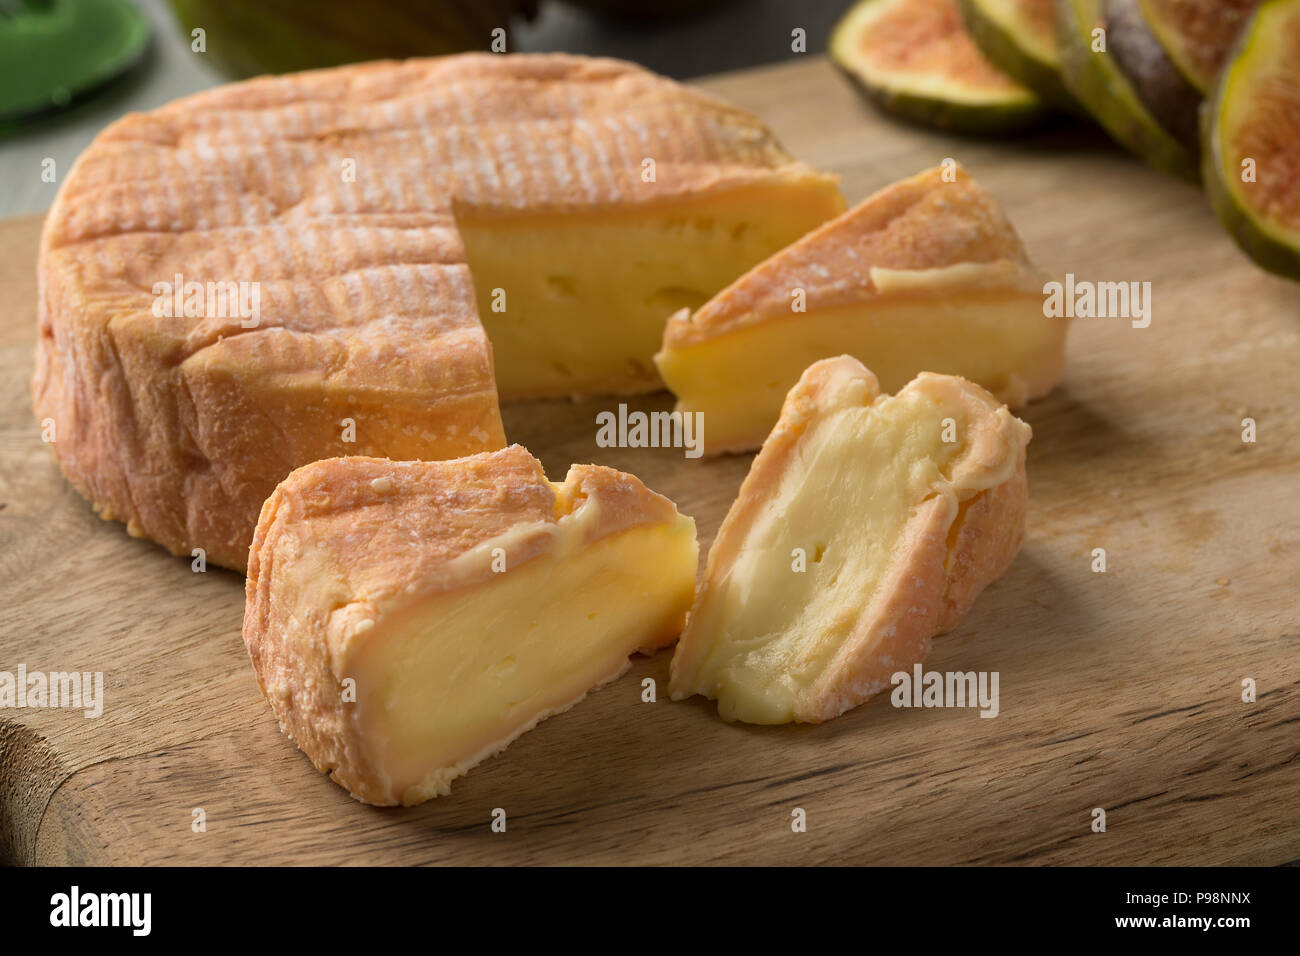 Trozo de queso maduro petit Munster cerca e higos frescos en el fondo para el postre Foto de stock